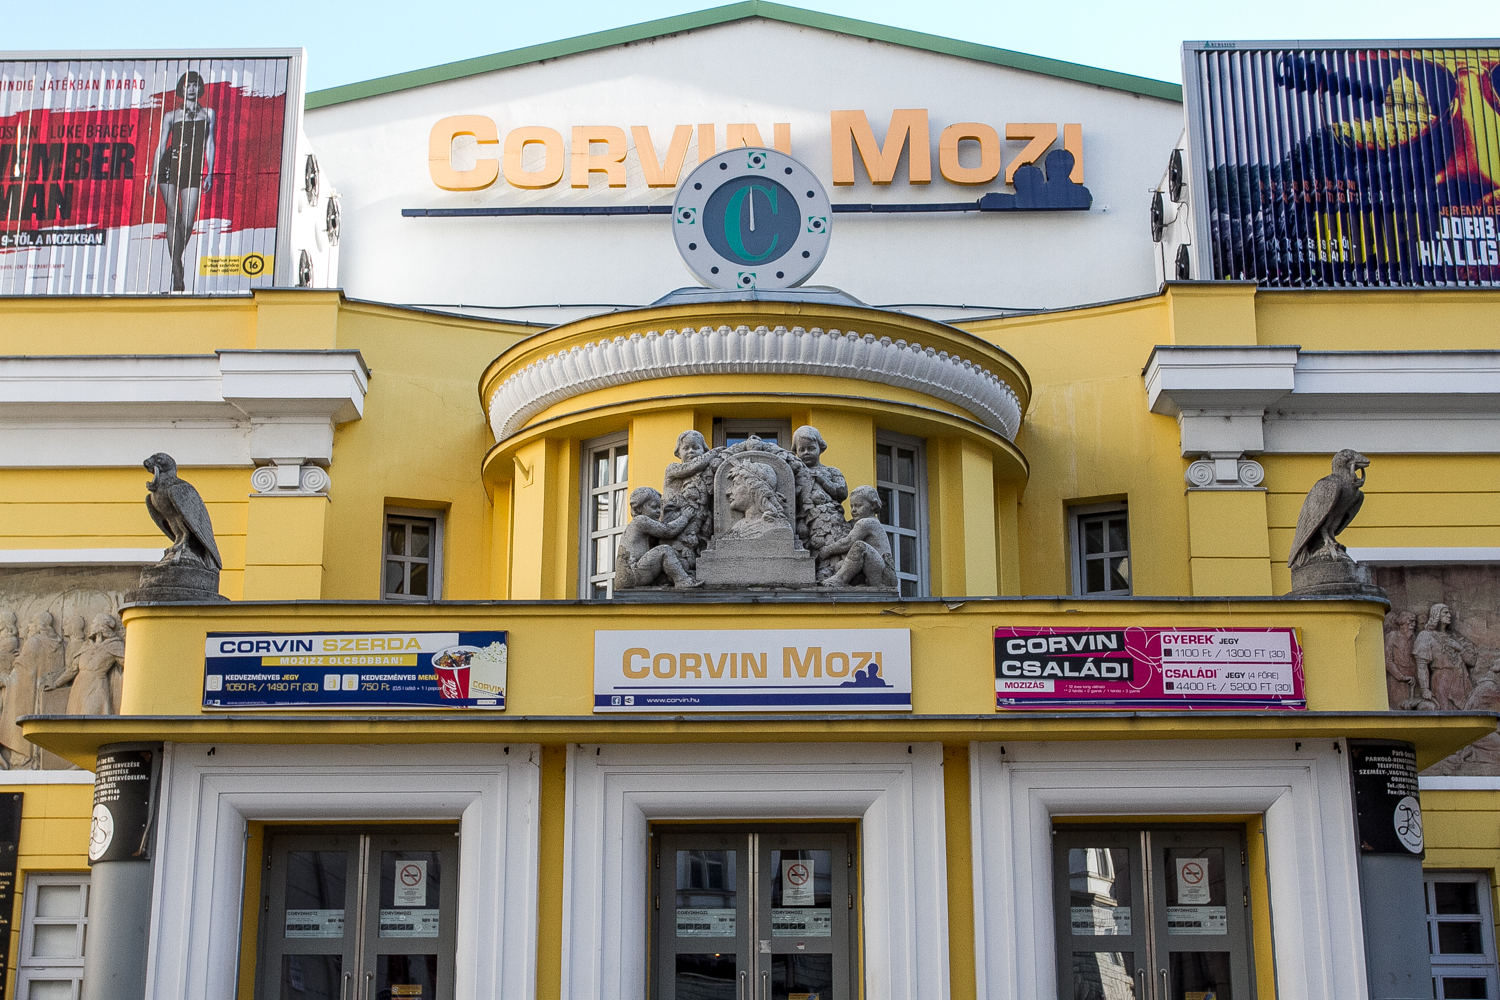 Jubileumi programsorozattal ünnepli 100. születésnapját a Corvin mozi